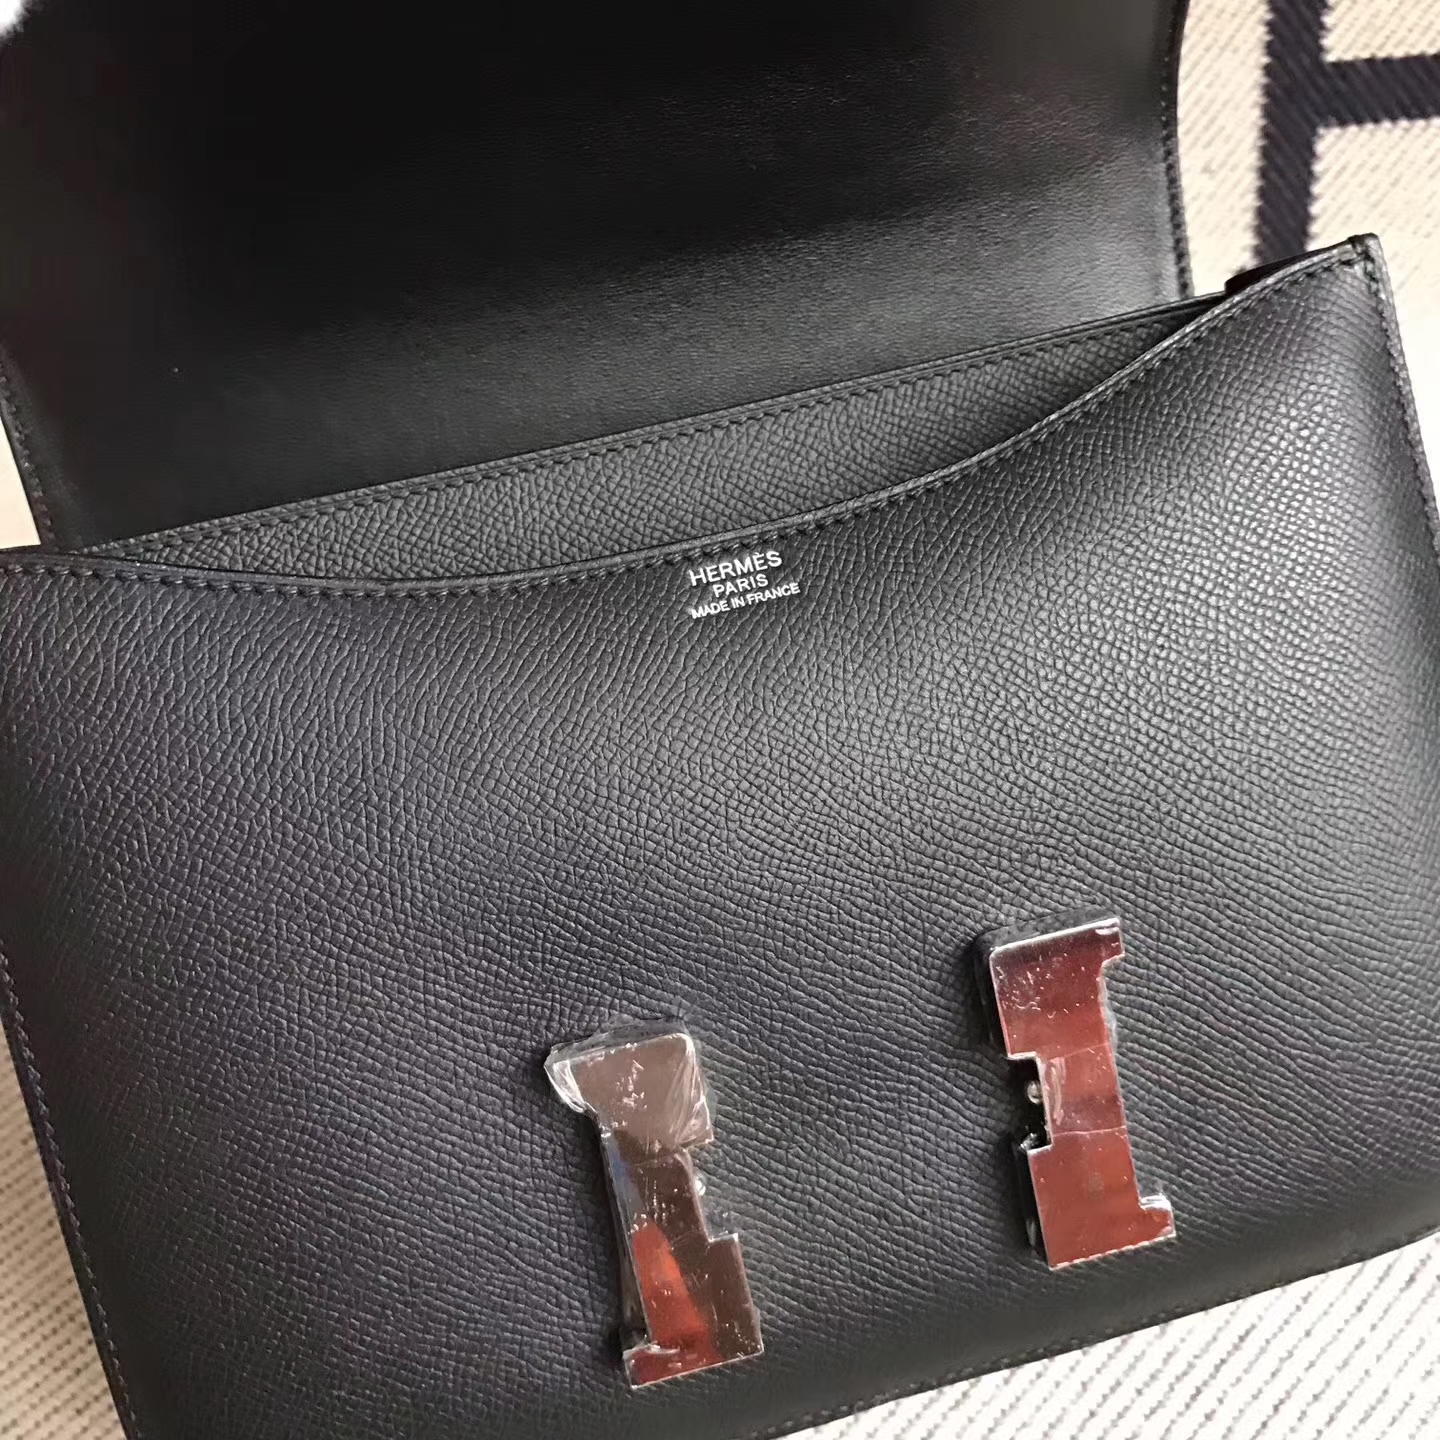 Hermes Constance23cm Bag CK89 Black Epsom Leather Silver Hardware